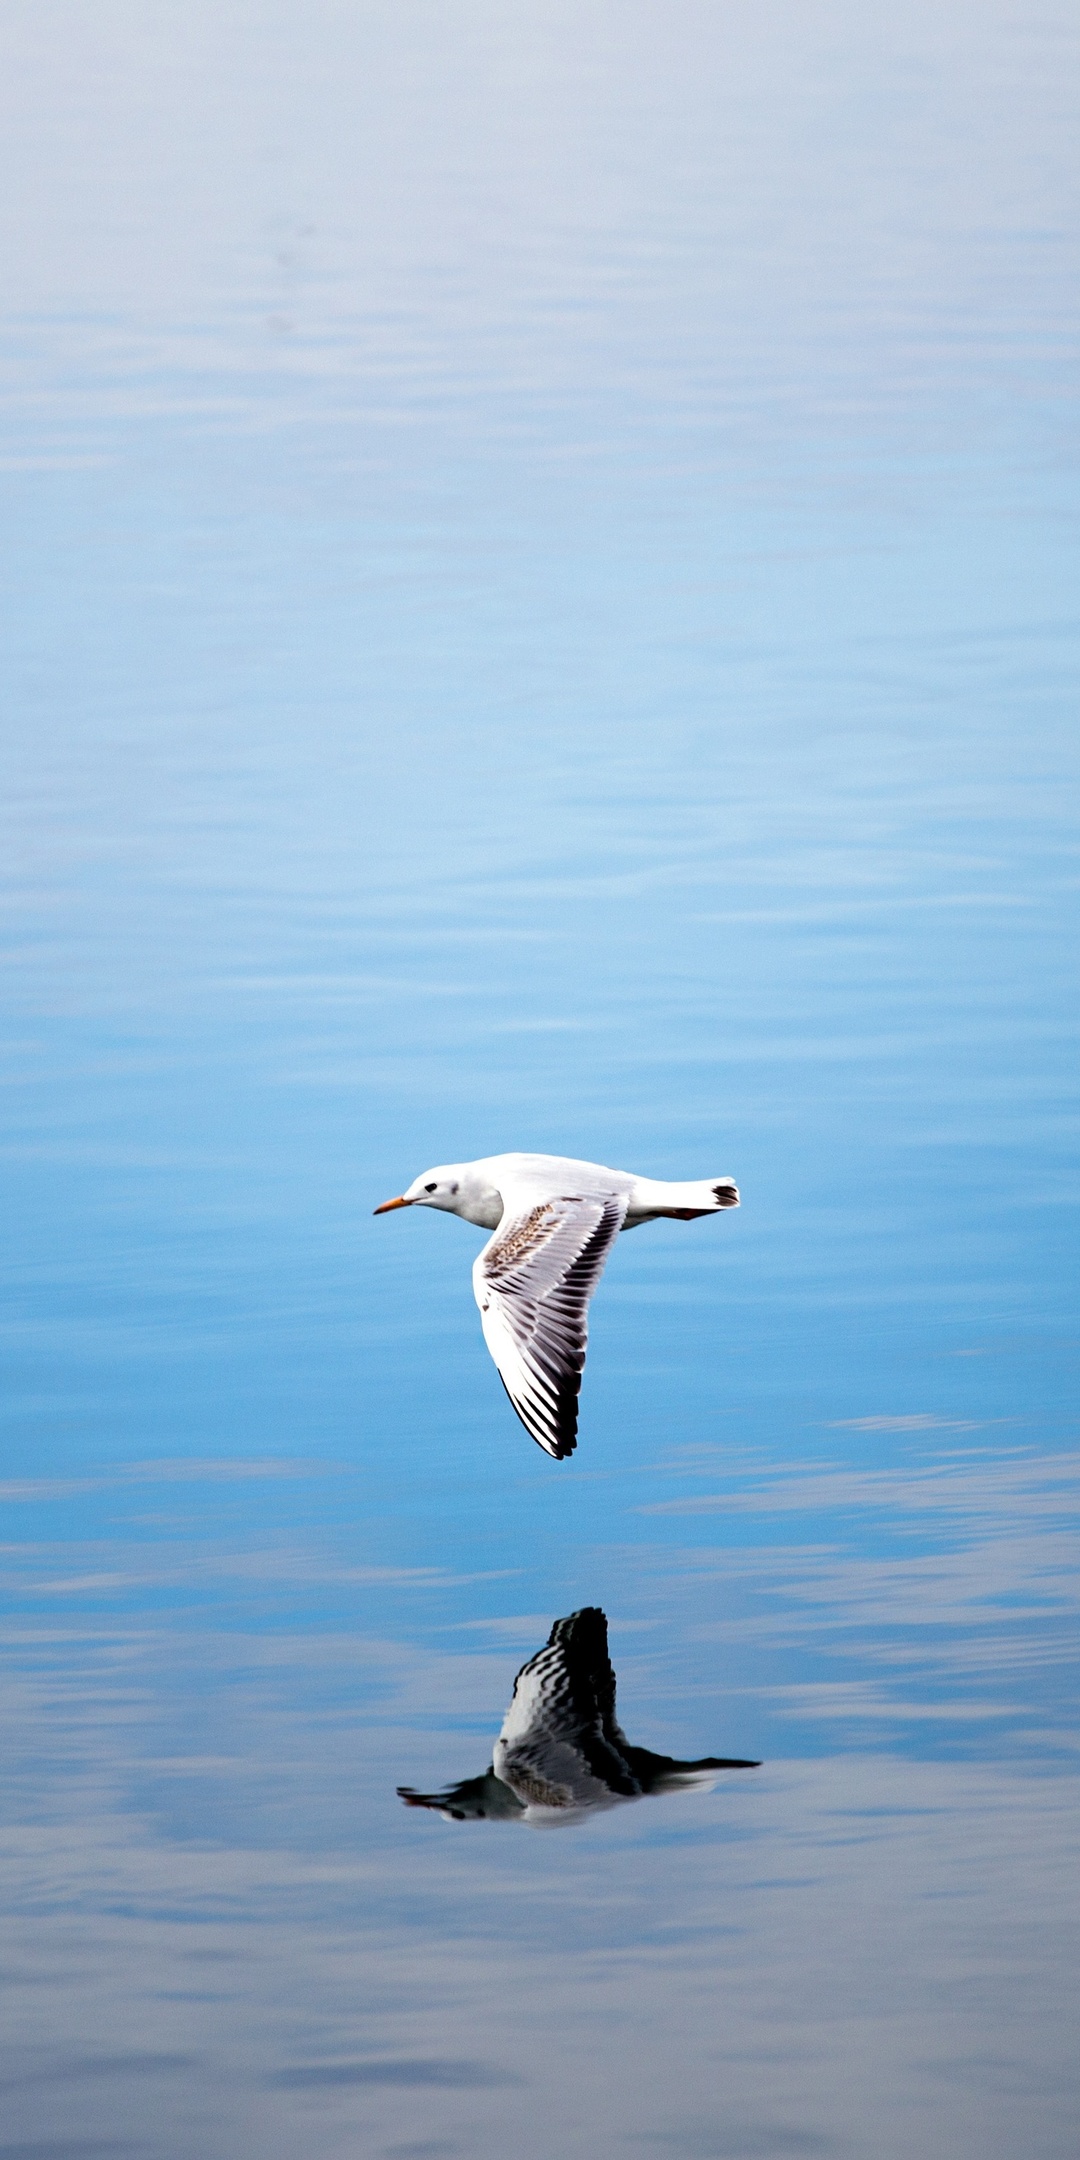 seagull-flying-over-body-of-water-ut.jpg